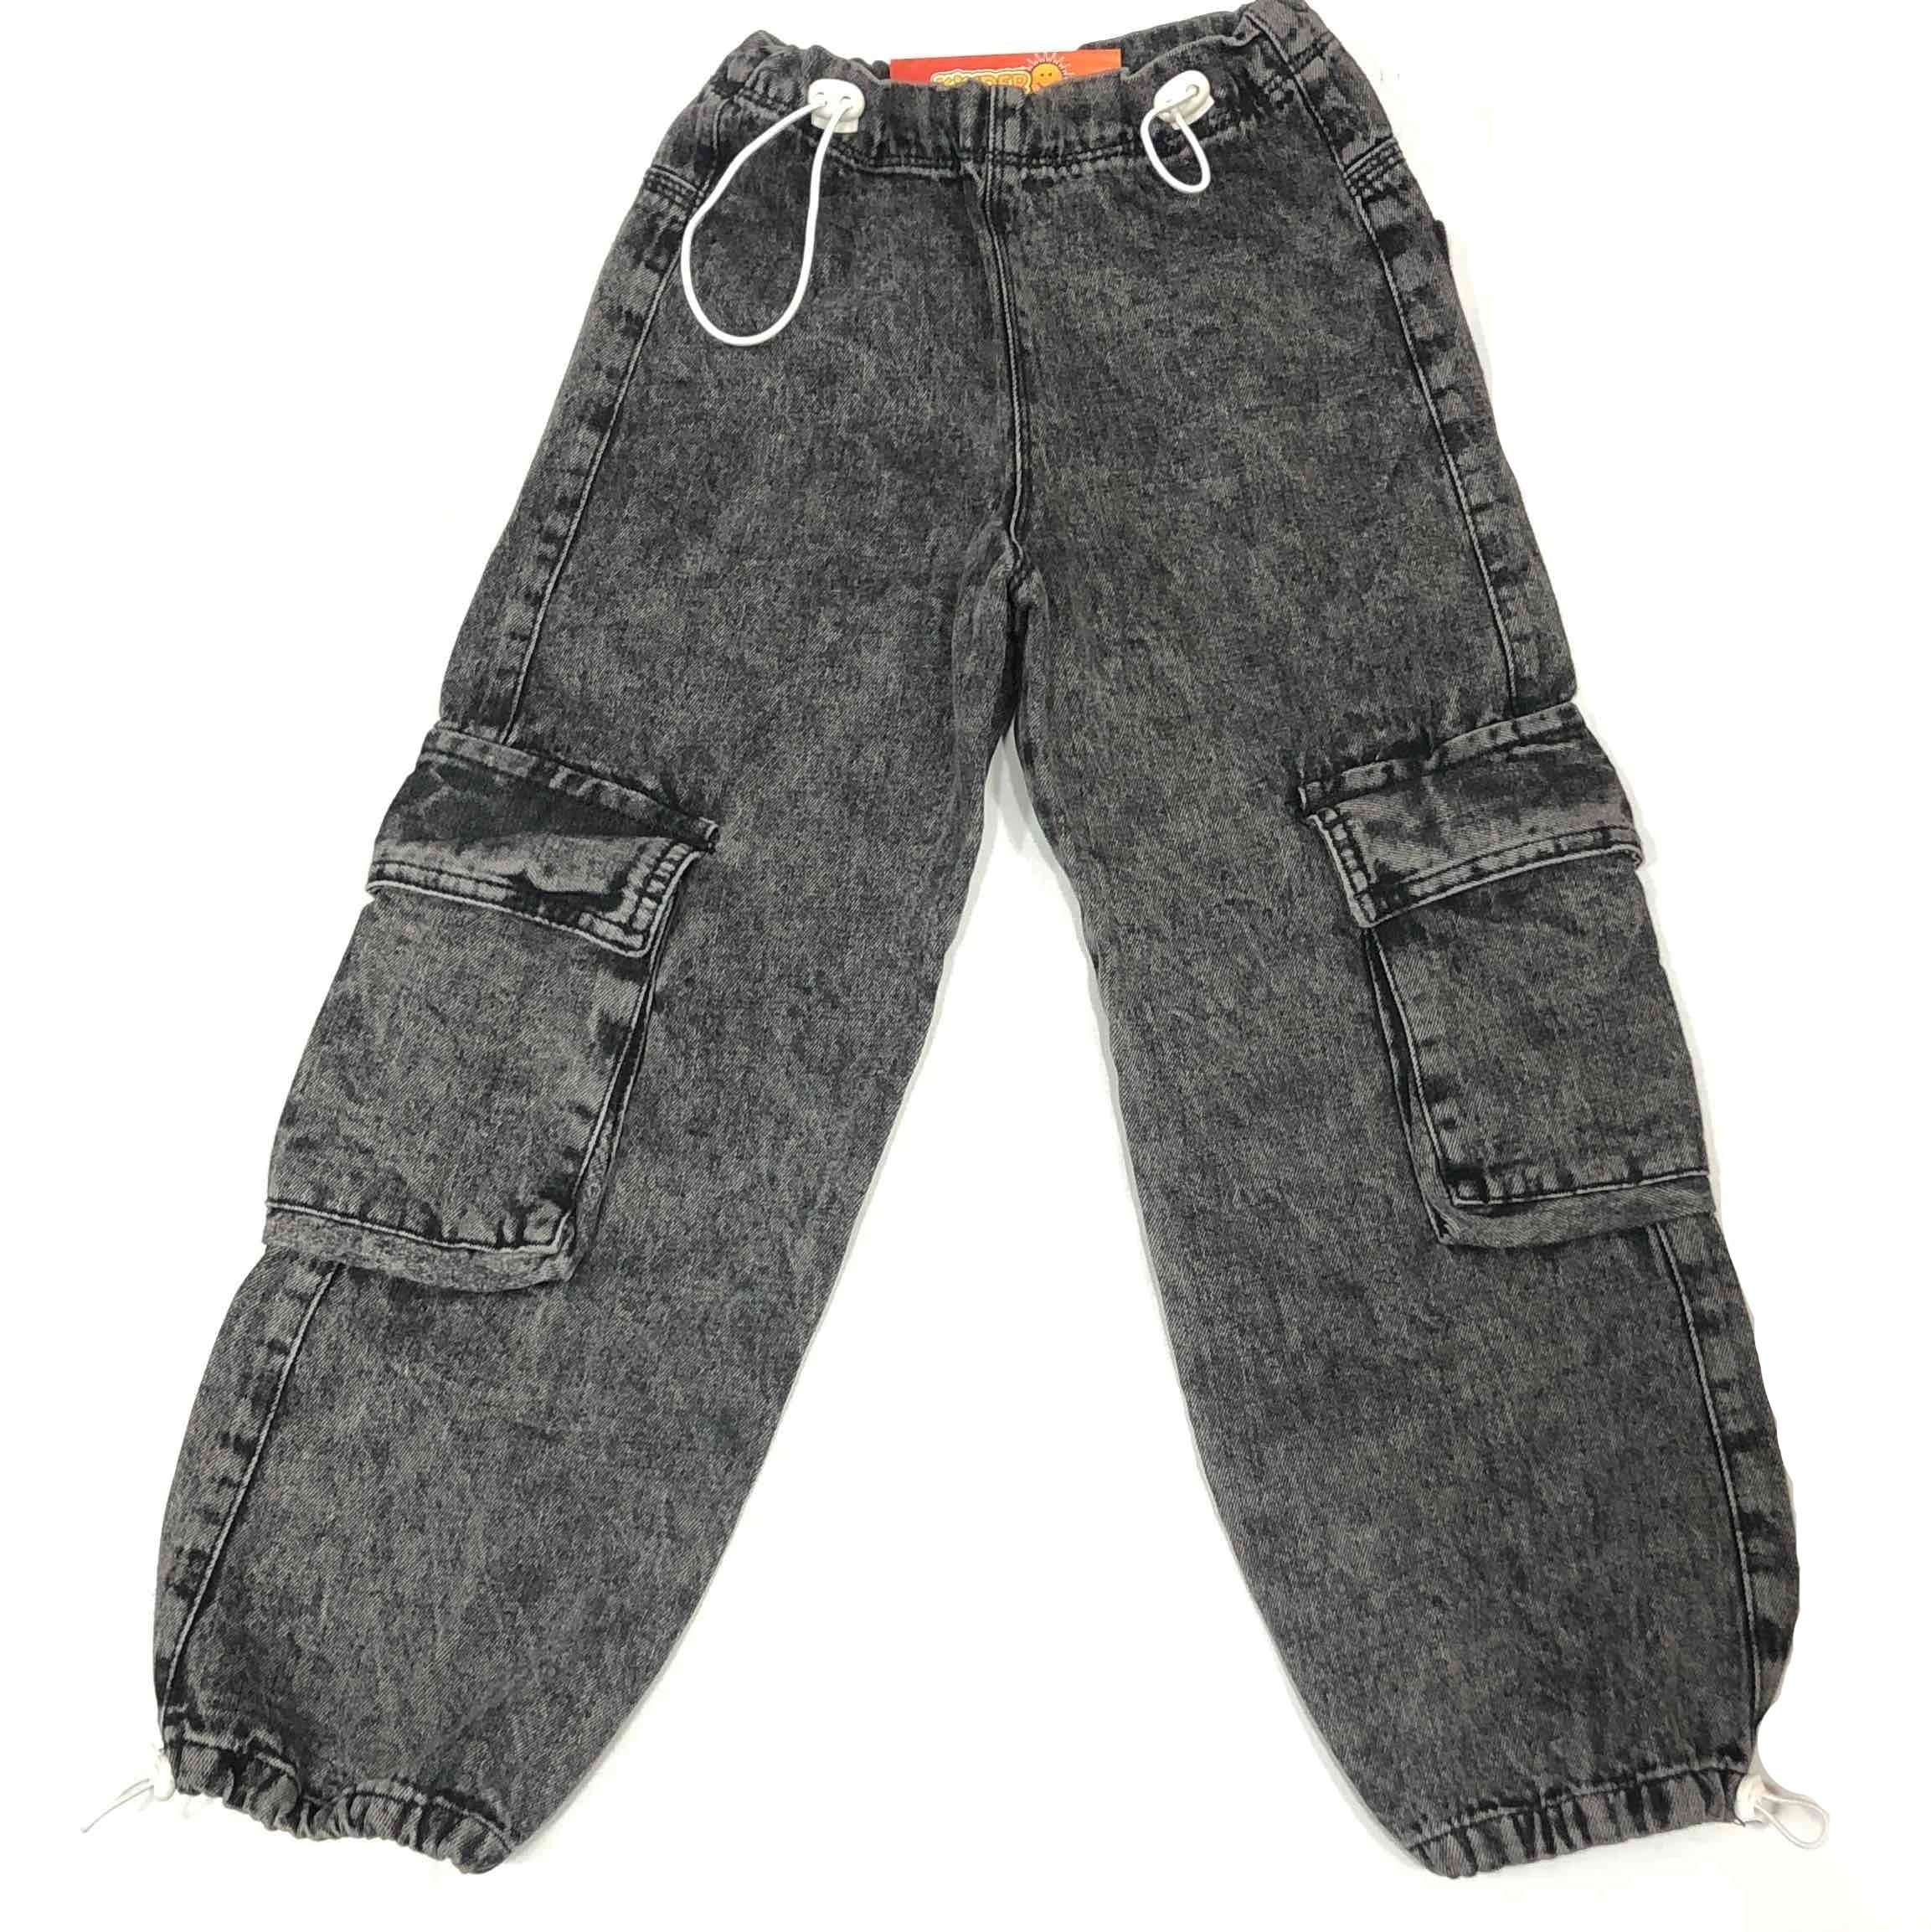 Jean Cargo c/cintura y puño ajustable rígido de Jeans